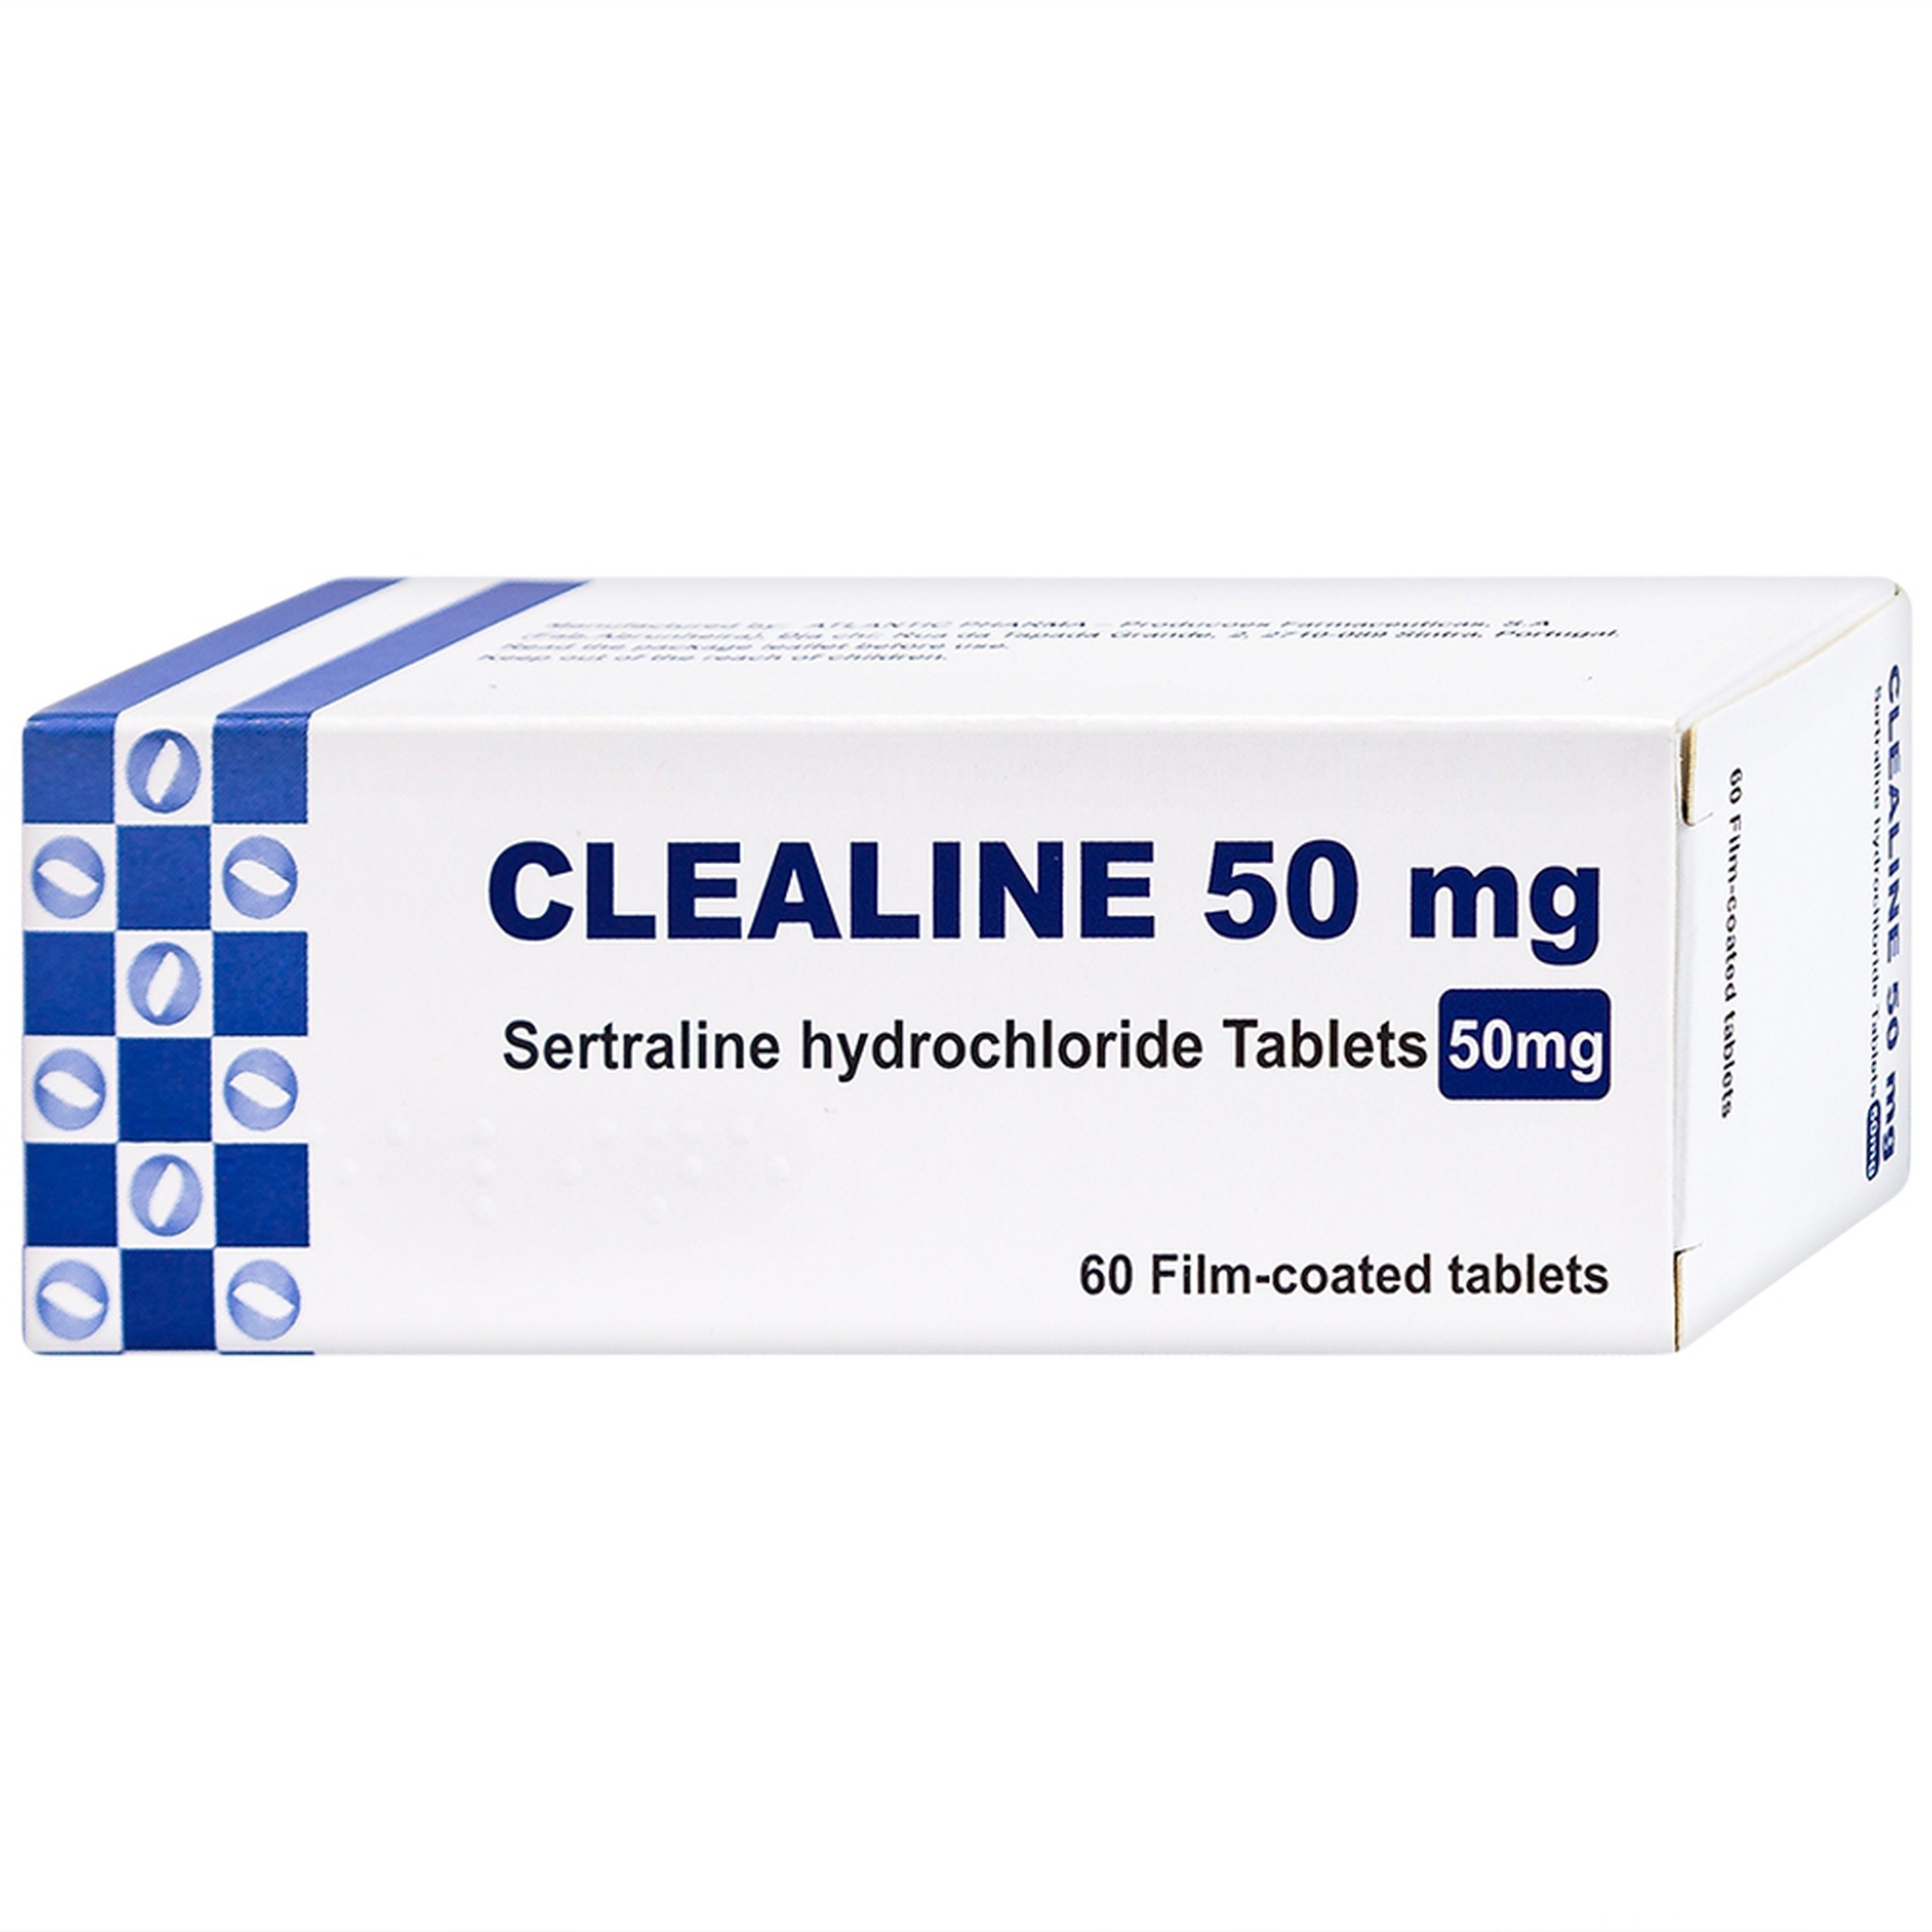 Thuốc Clealine 50mg Atlantic điều trị triệu chứng trầm cảm, rối loạn cưỡng bức ám ảnh (6 vỉ x 10 viên)